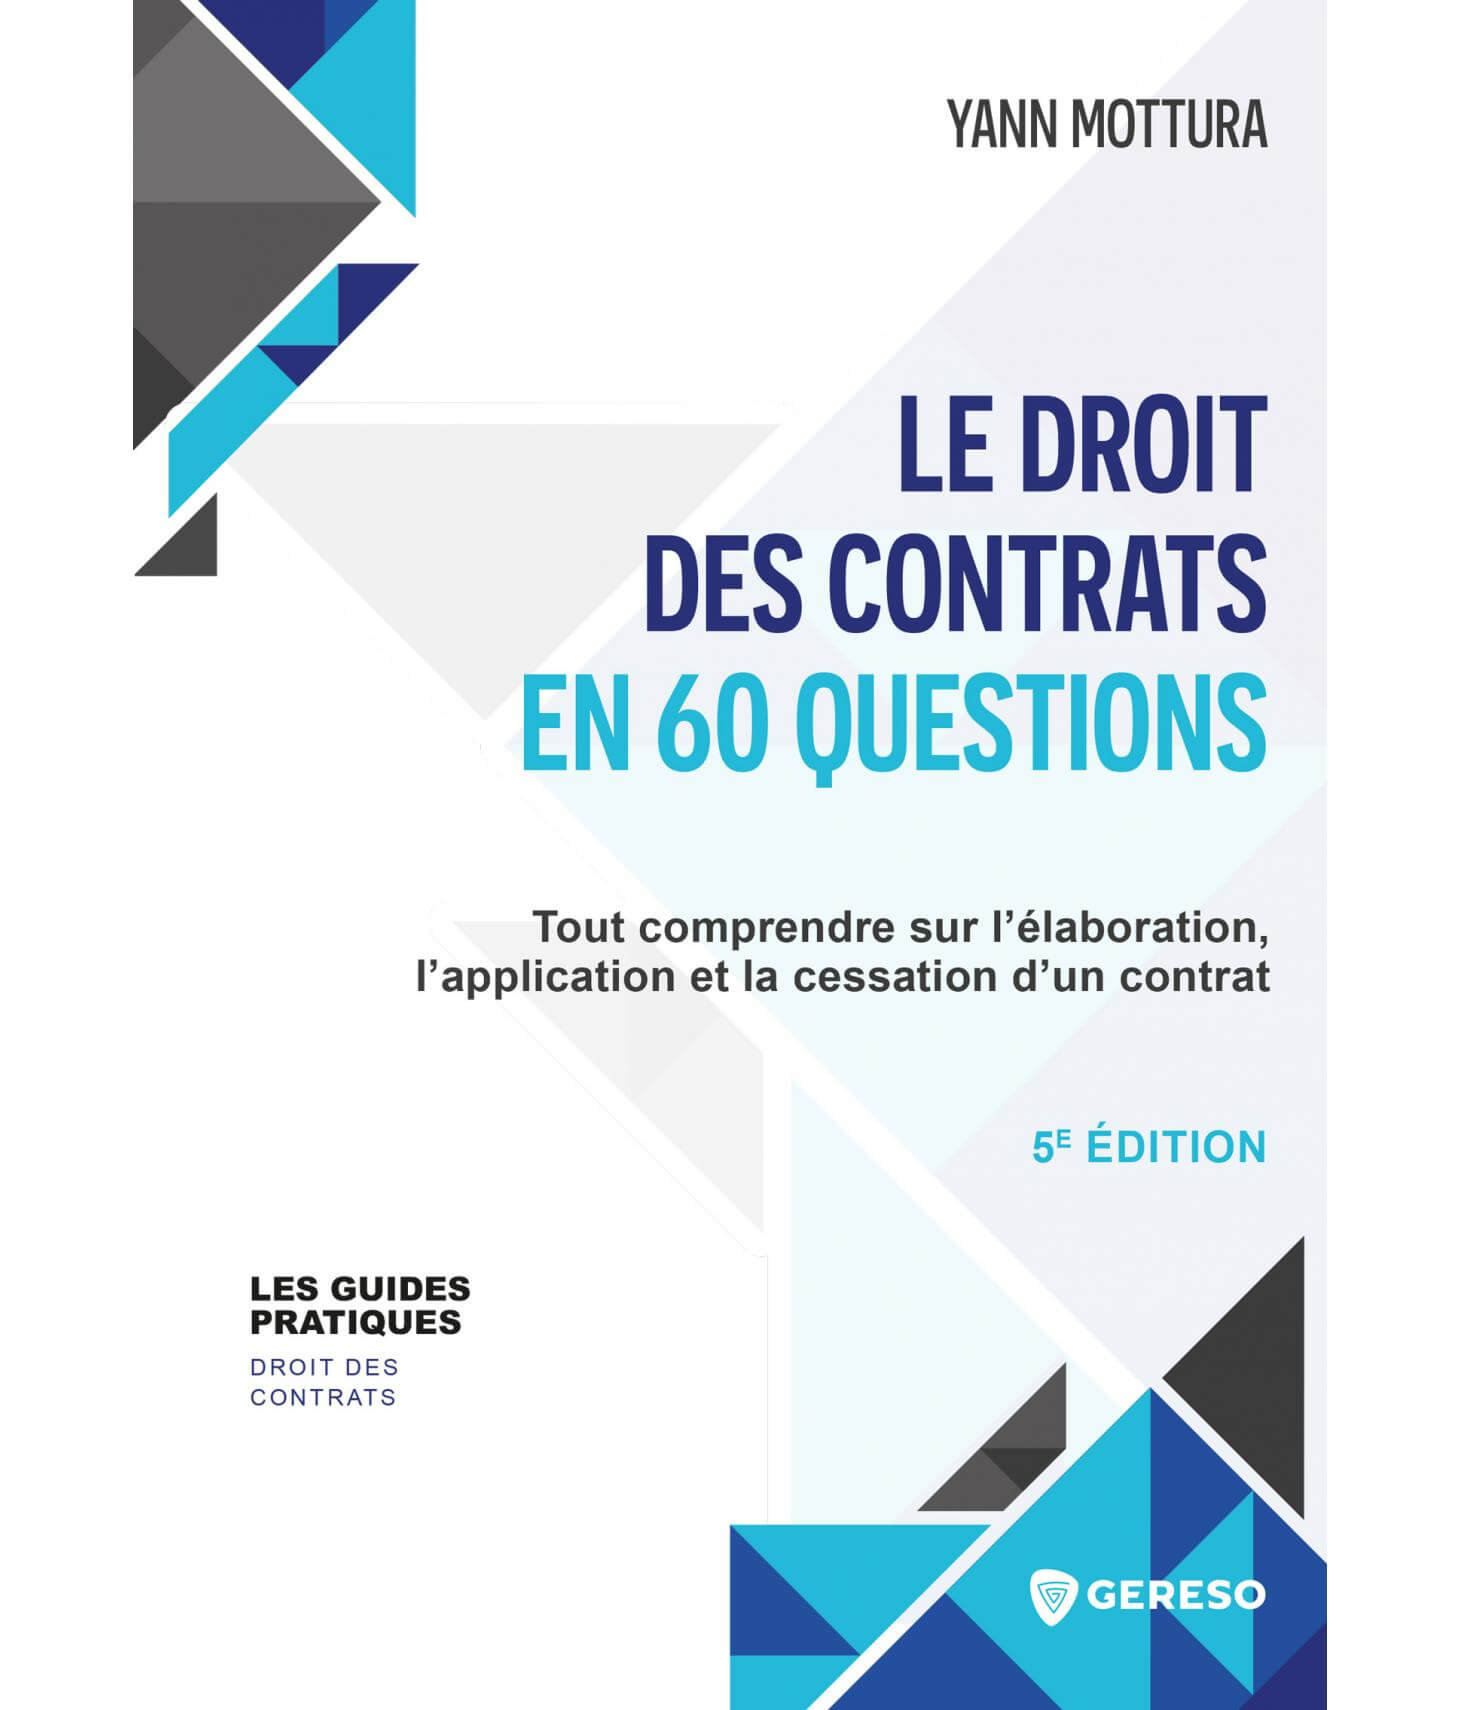 Le droit des contrats en 60 questions : un guide pour connaitre ses droits et ses obligations